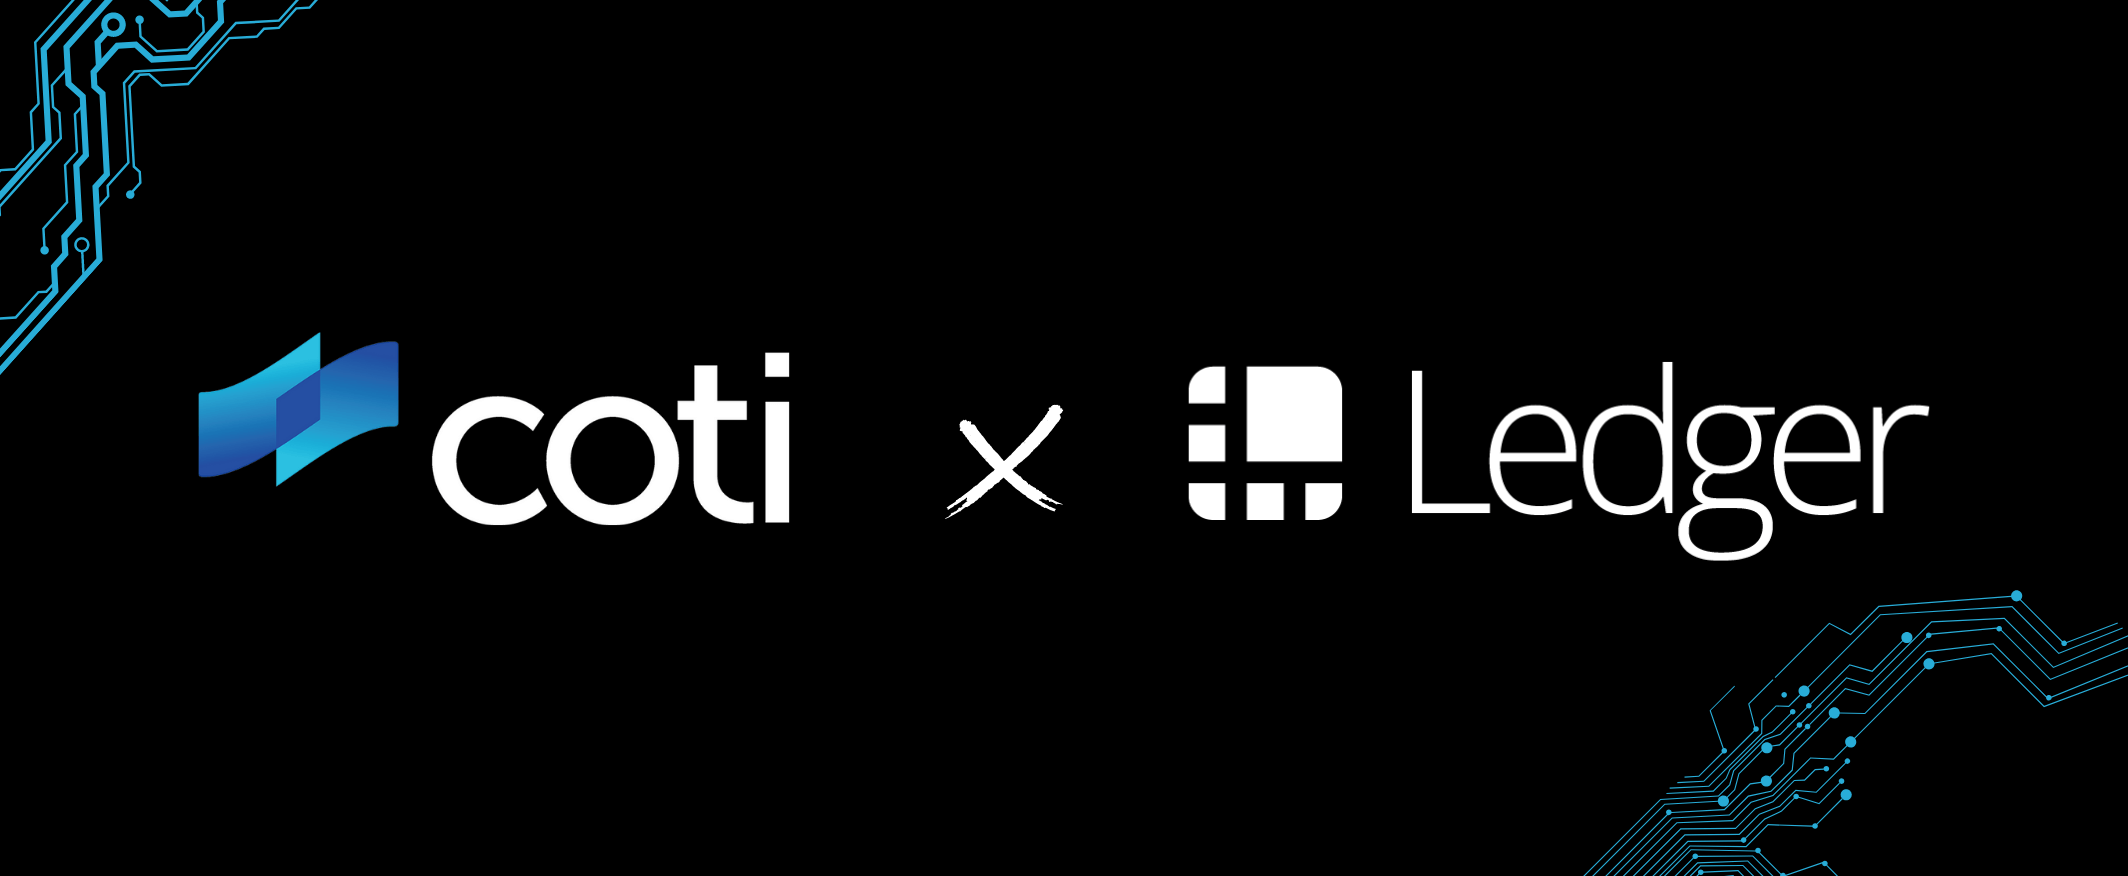 COTI x Ledger Partnership